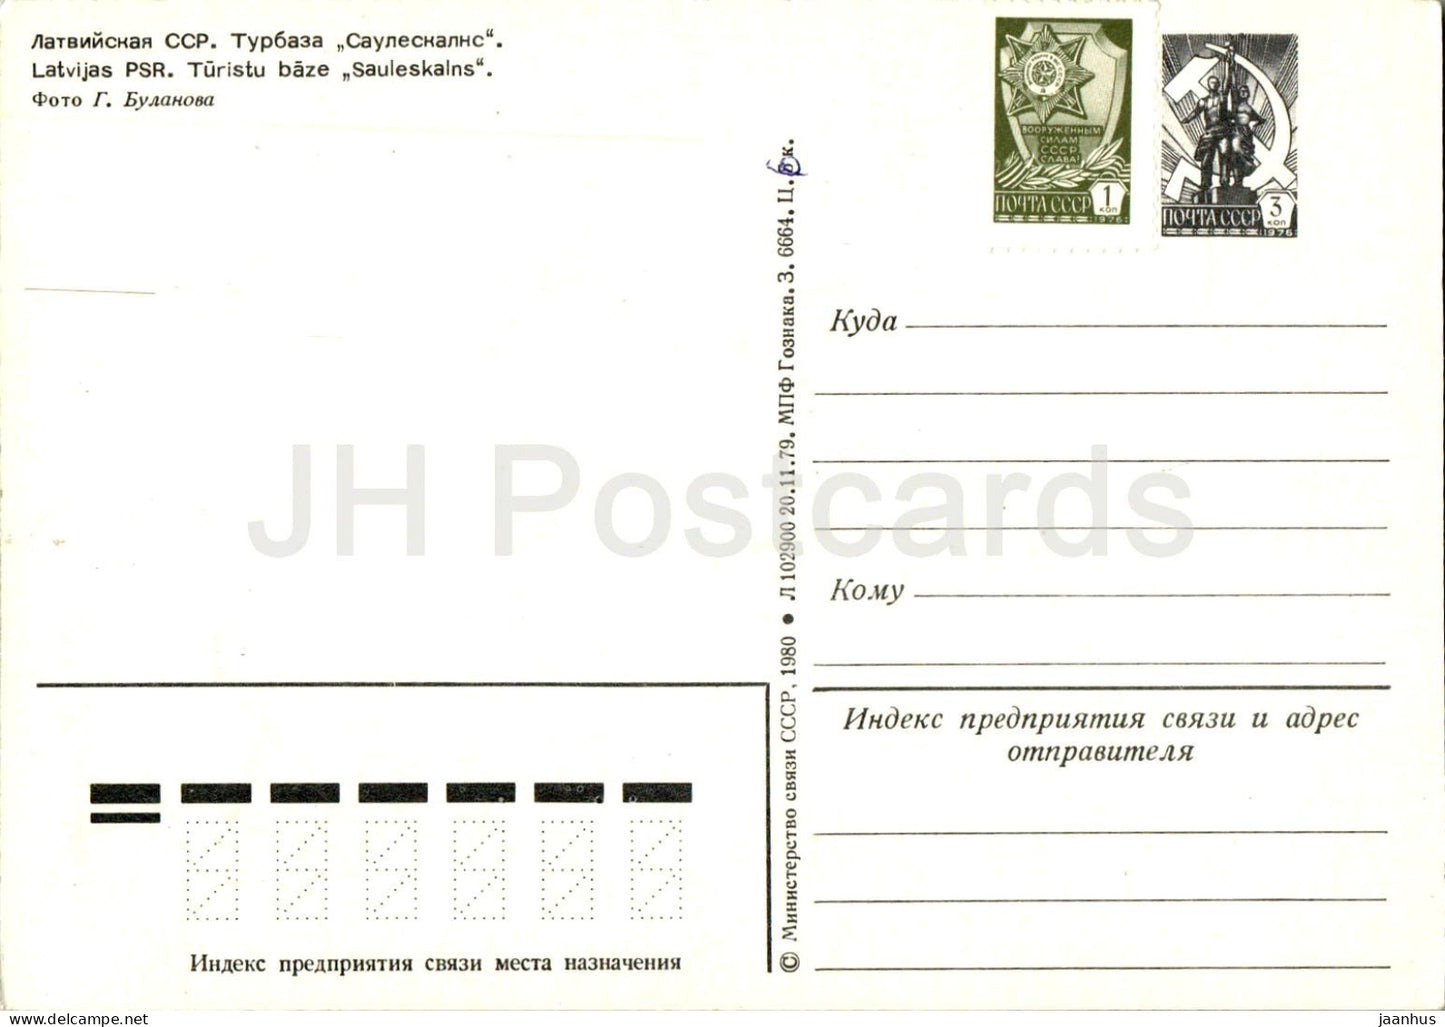 Base touristique Sauleskalns - entier postal - 1980 - Lettonie URSS - inutilisé 